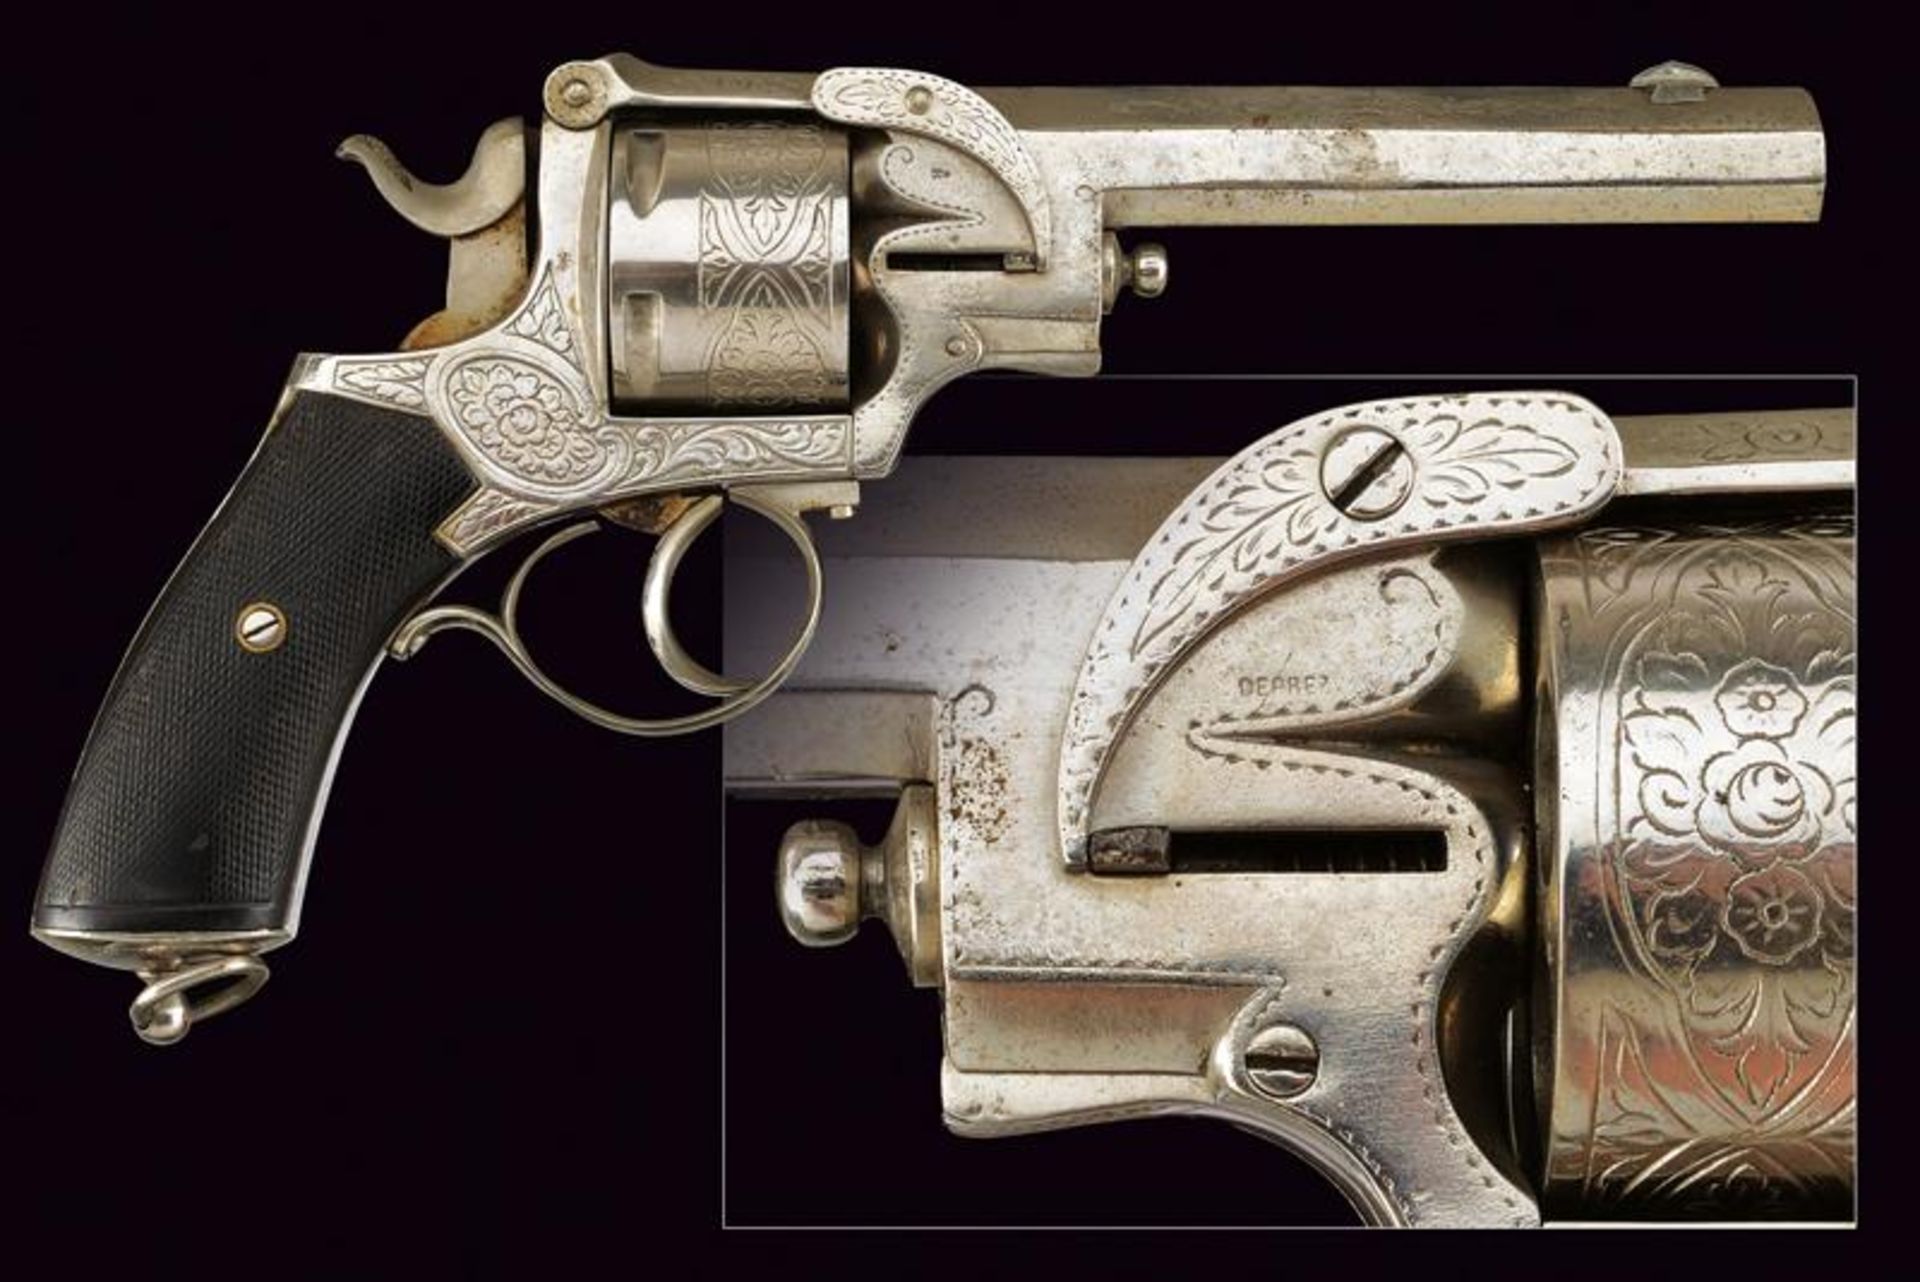 A rare Deprez centerfire revolver